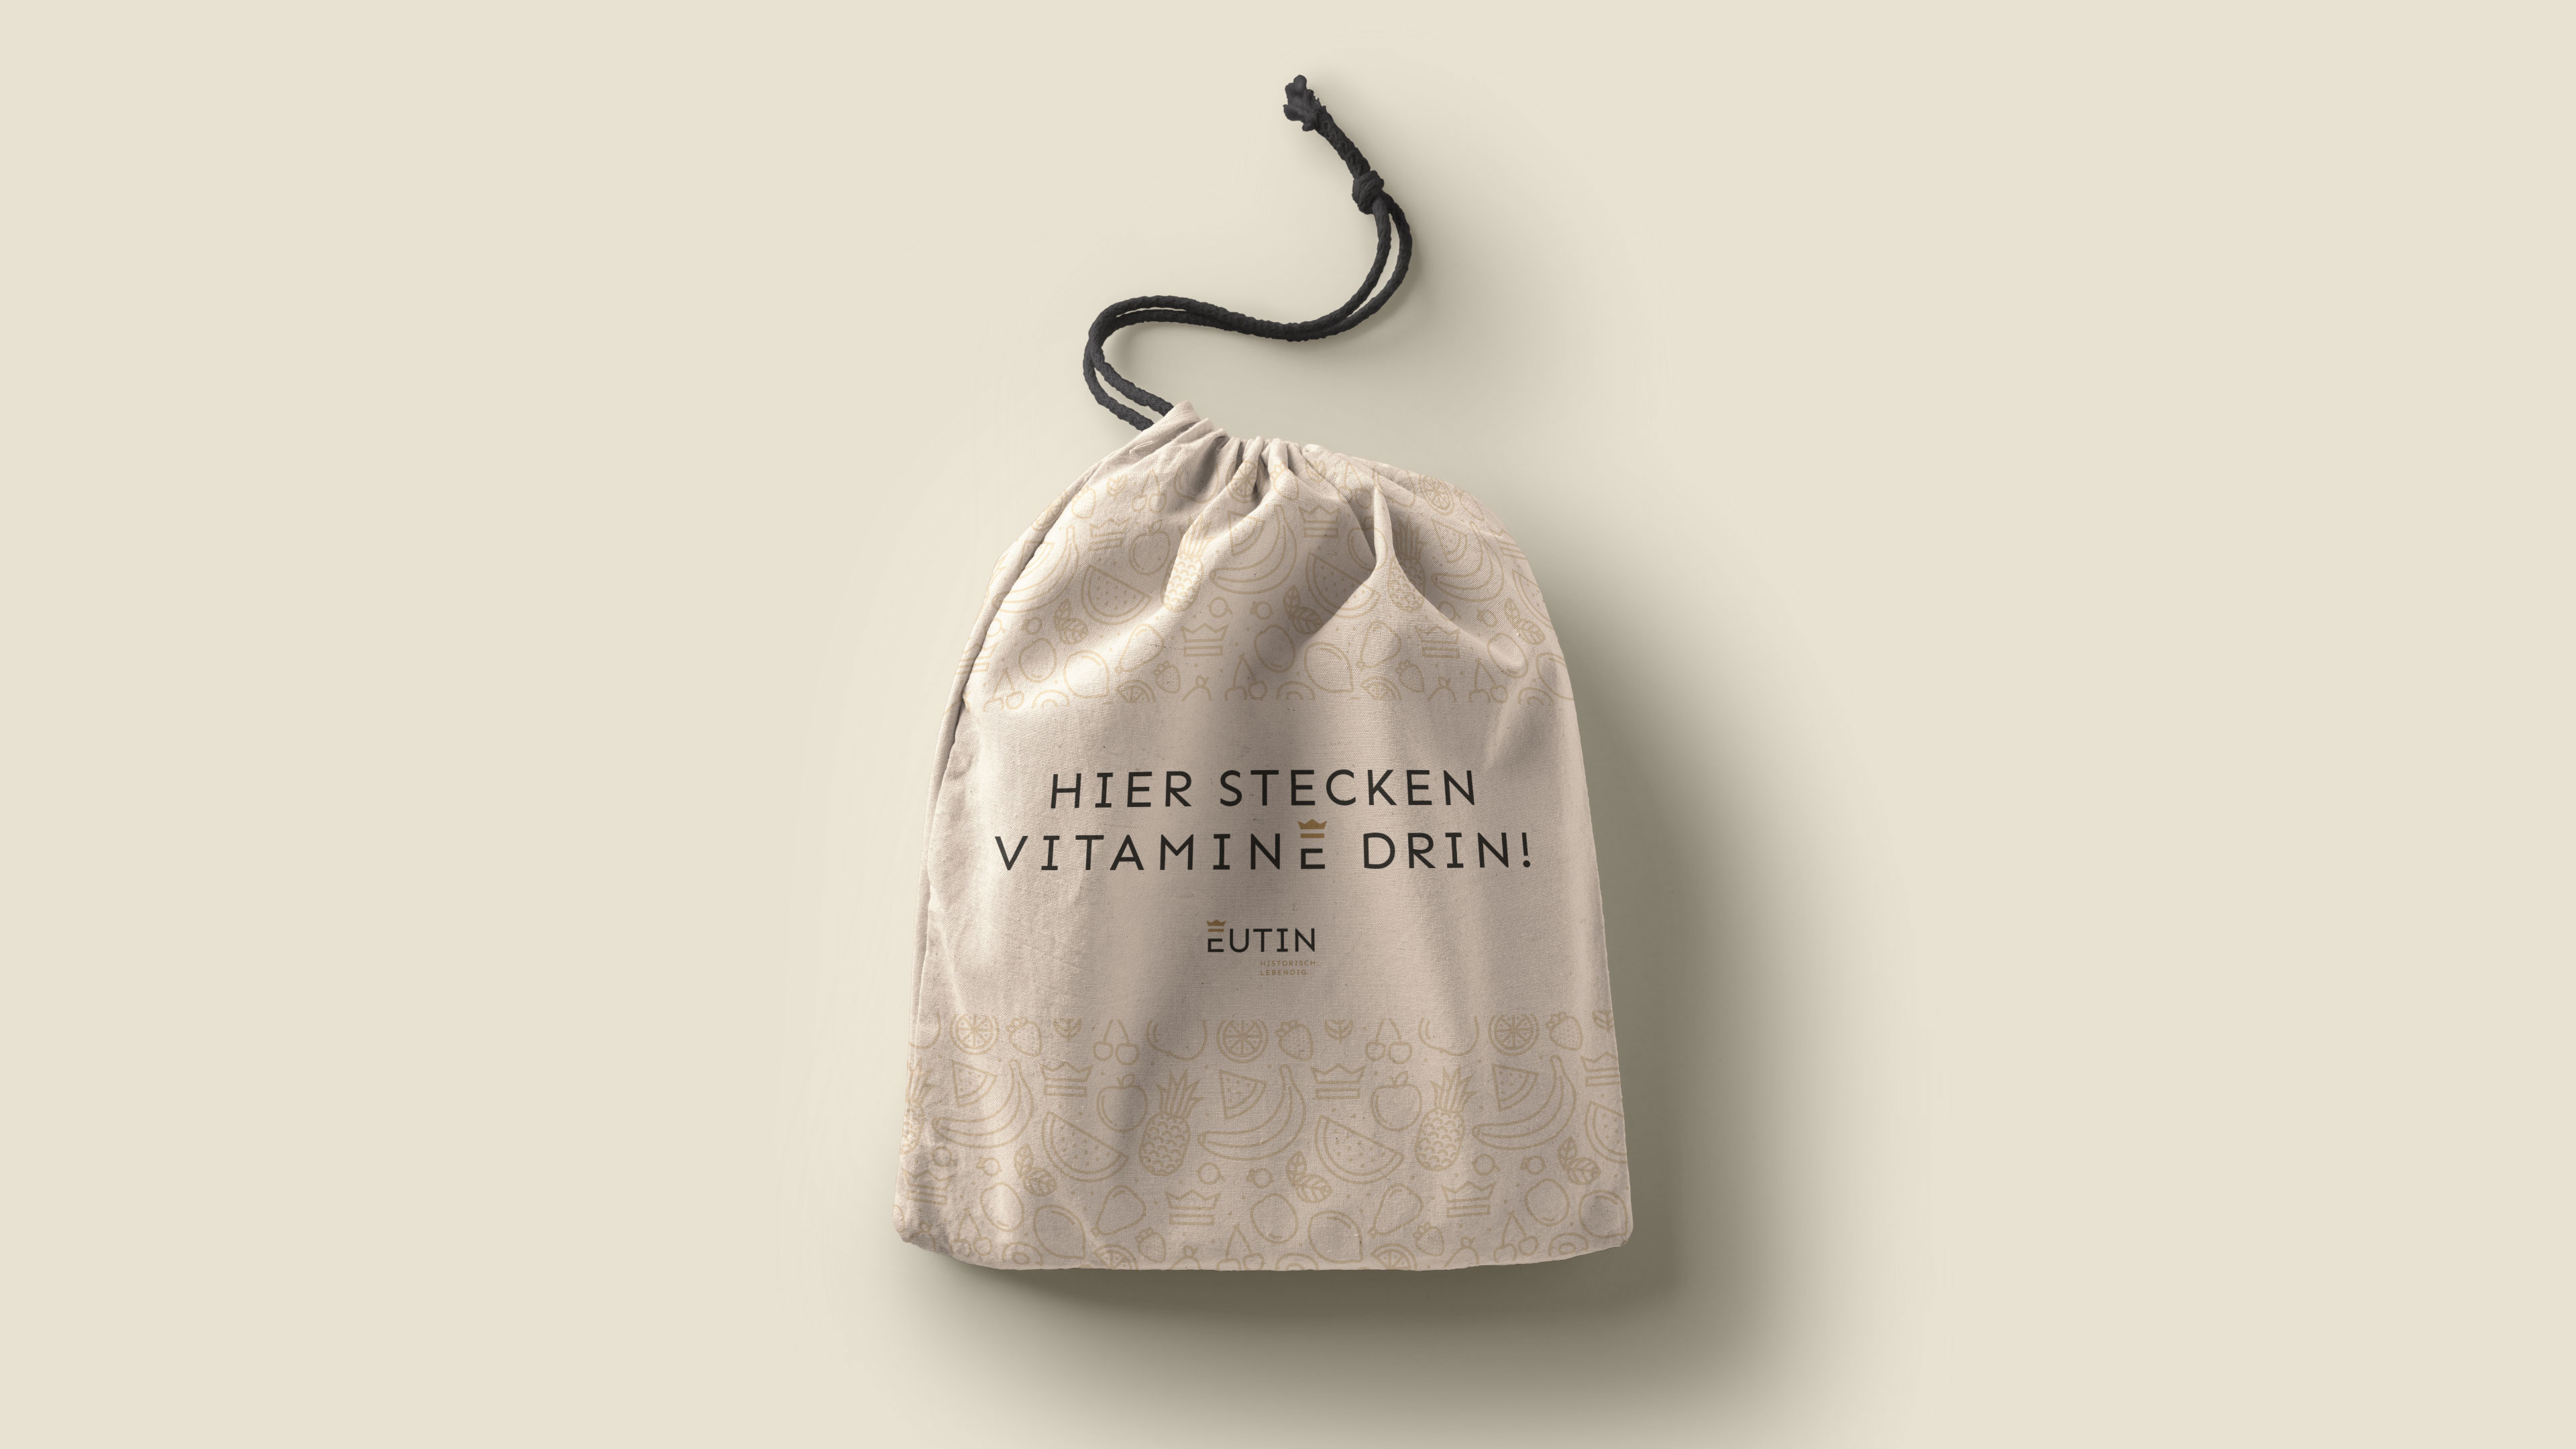 Stoffbeutel mit Logodruck und Text "Hier stecken Vitamine drin"